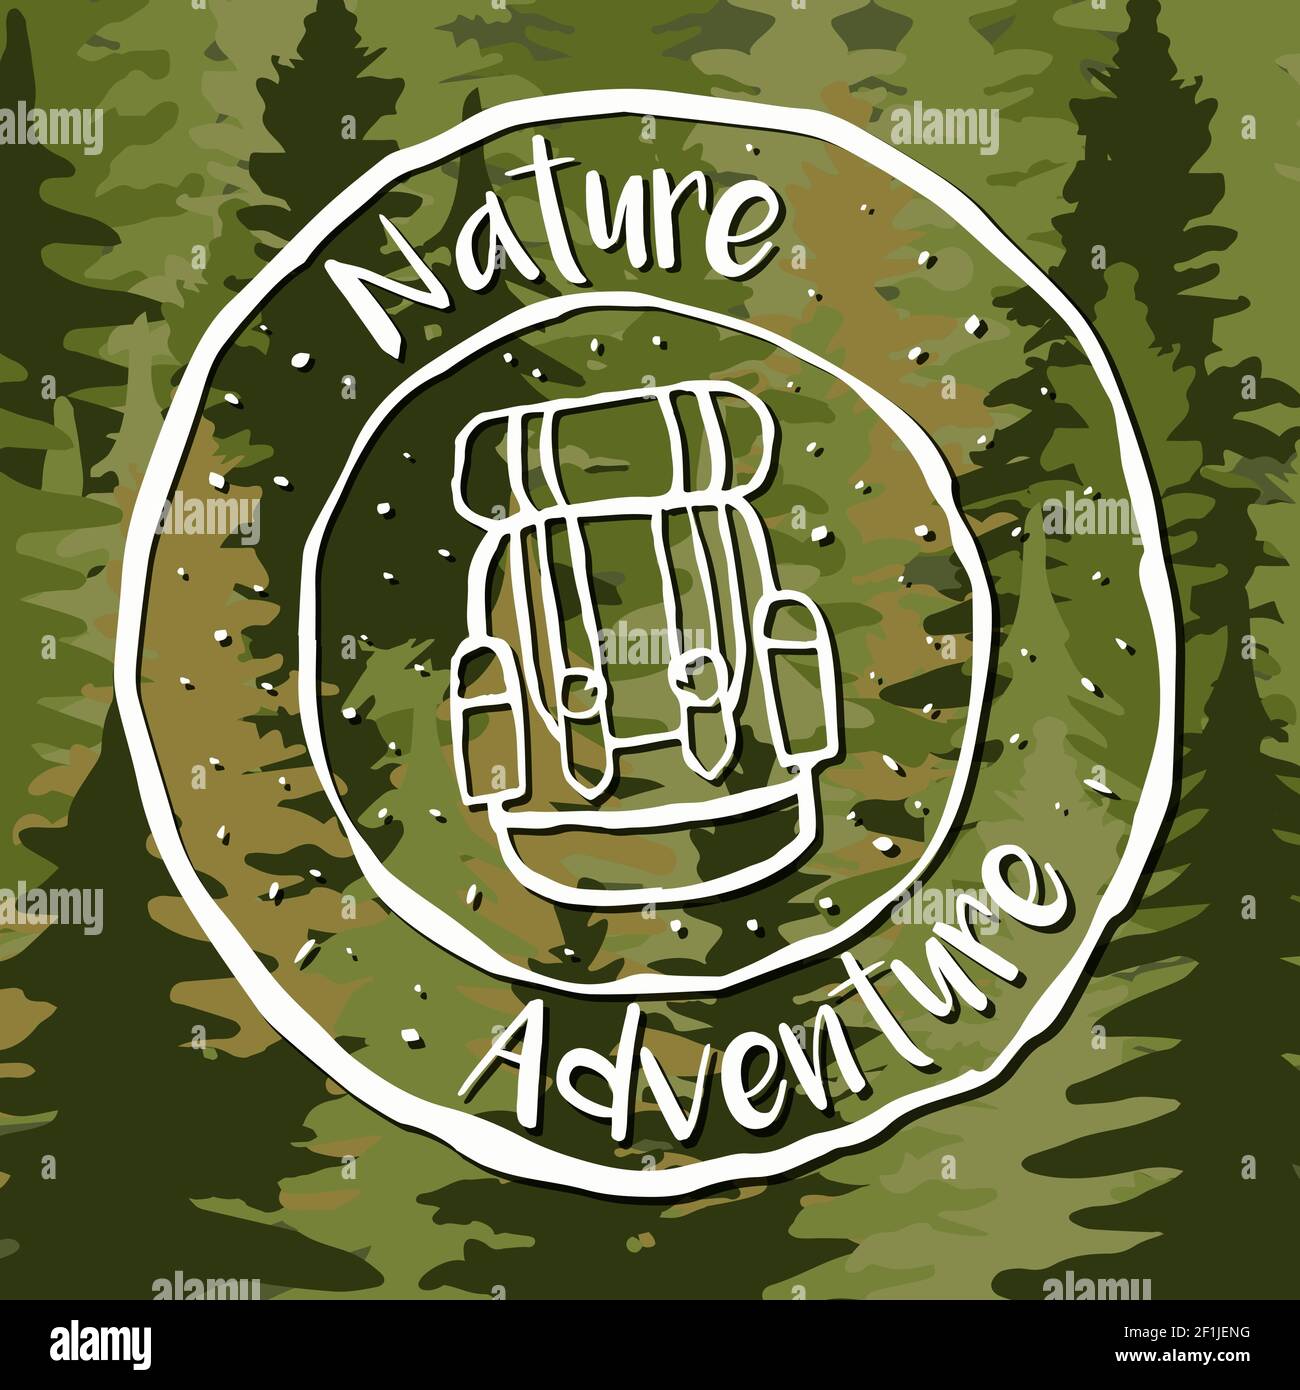 Natur Abenteuer Label mit handgezeichneten Rucksack-Design und Pinienwald Hintergrund. Öko Tourismus Urlaubskonzept. Stock Vektor